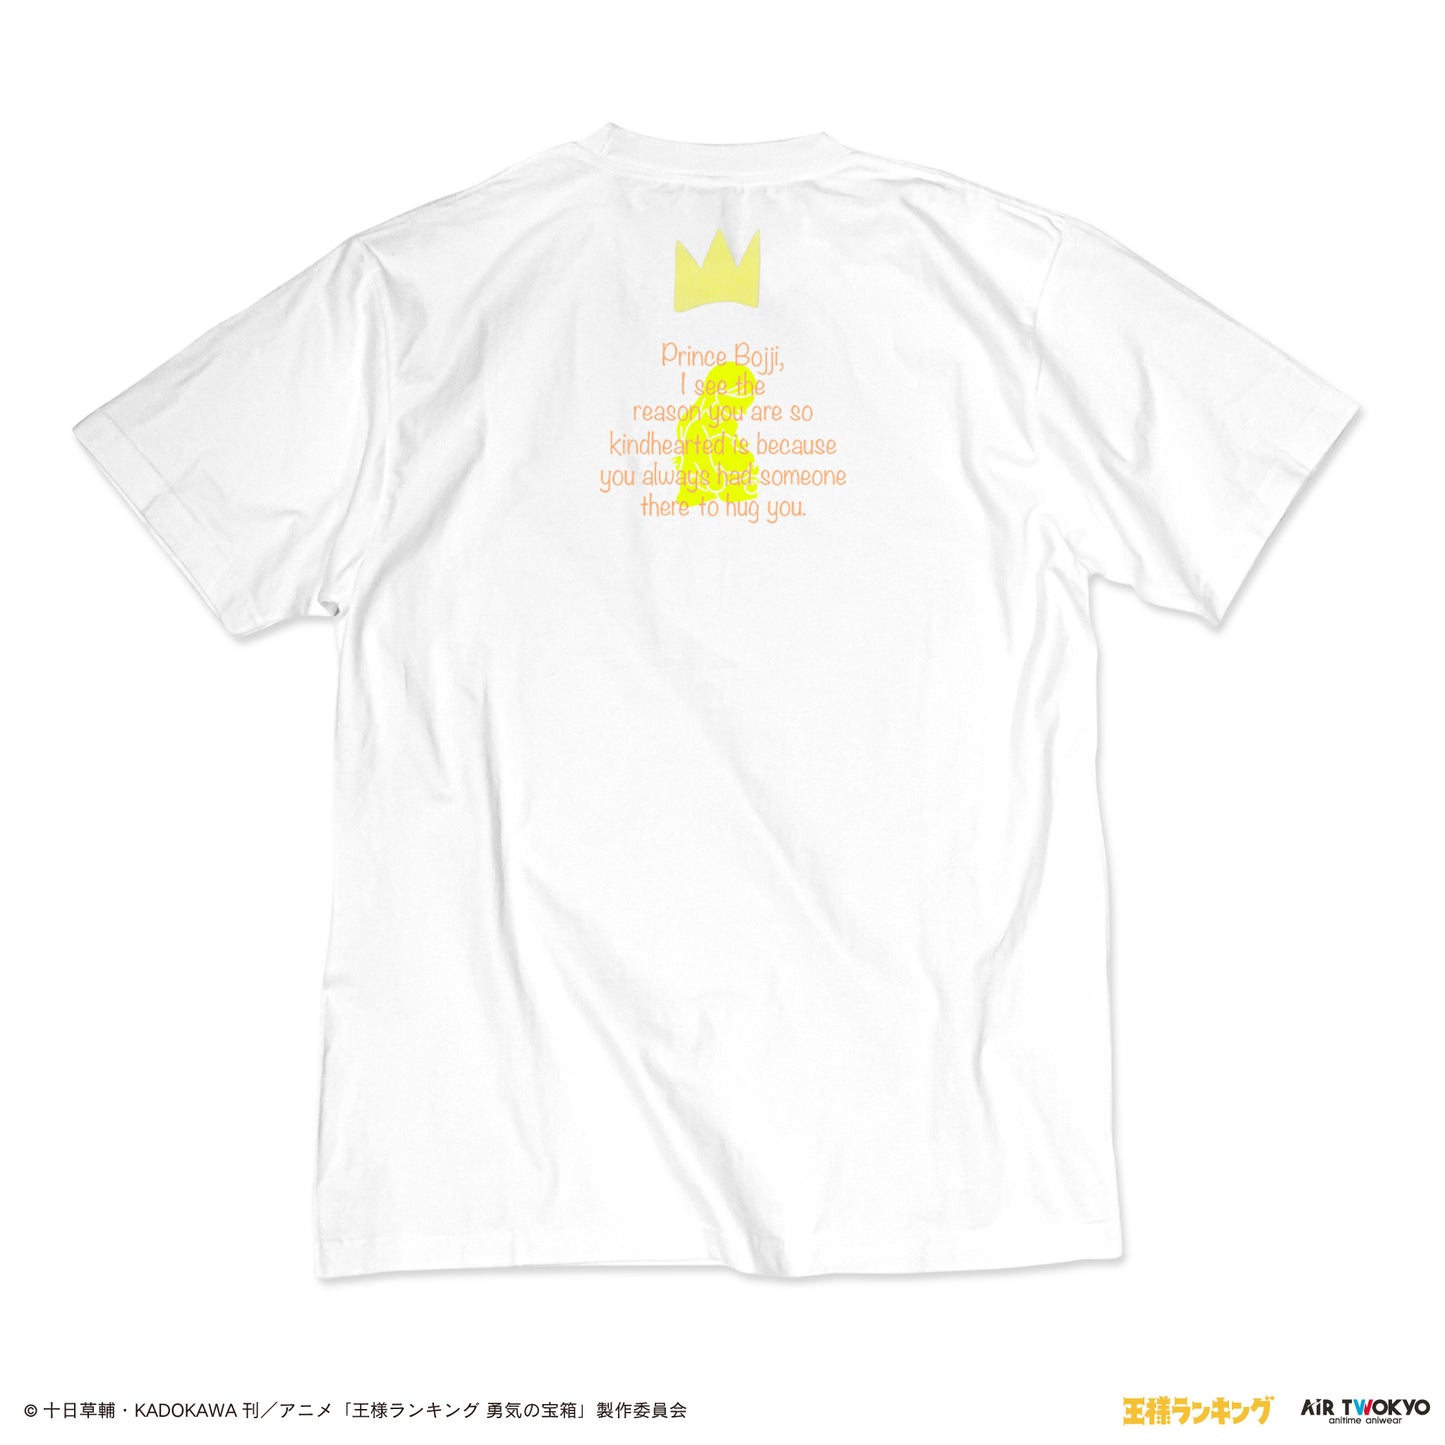 TVアニメ「王様ランキング」シーンイラストTシャツ5